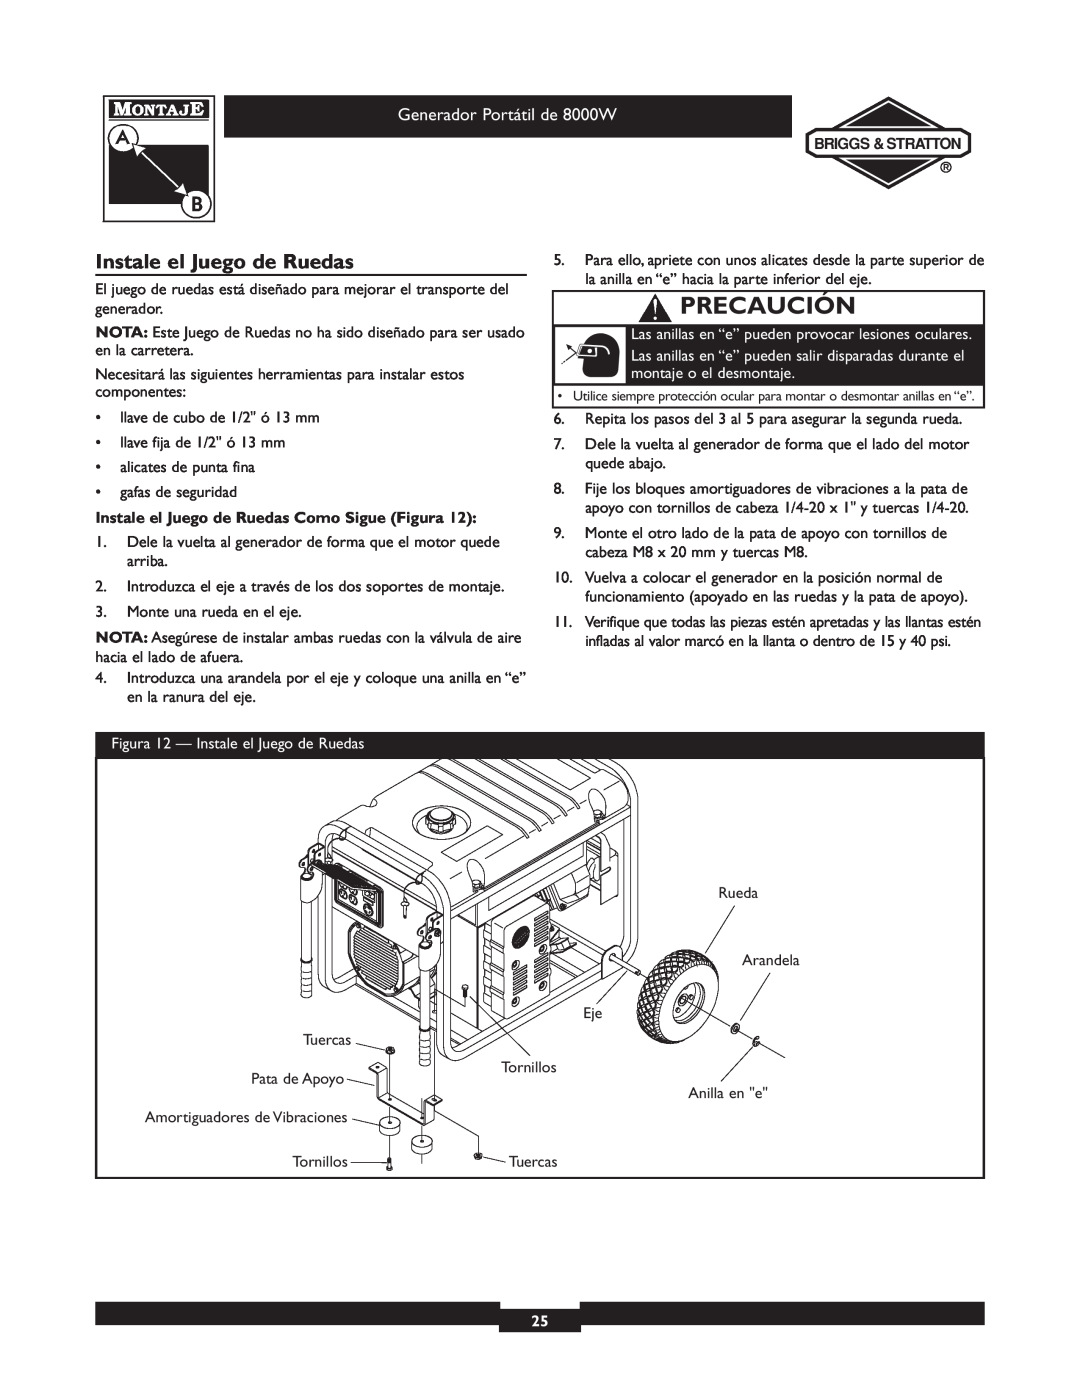 Briggs & Stratton 030210-2 manual Instale el Juego de Ruedas, Precaución, Generador Portátil de 8000W 